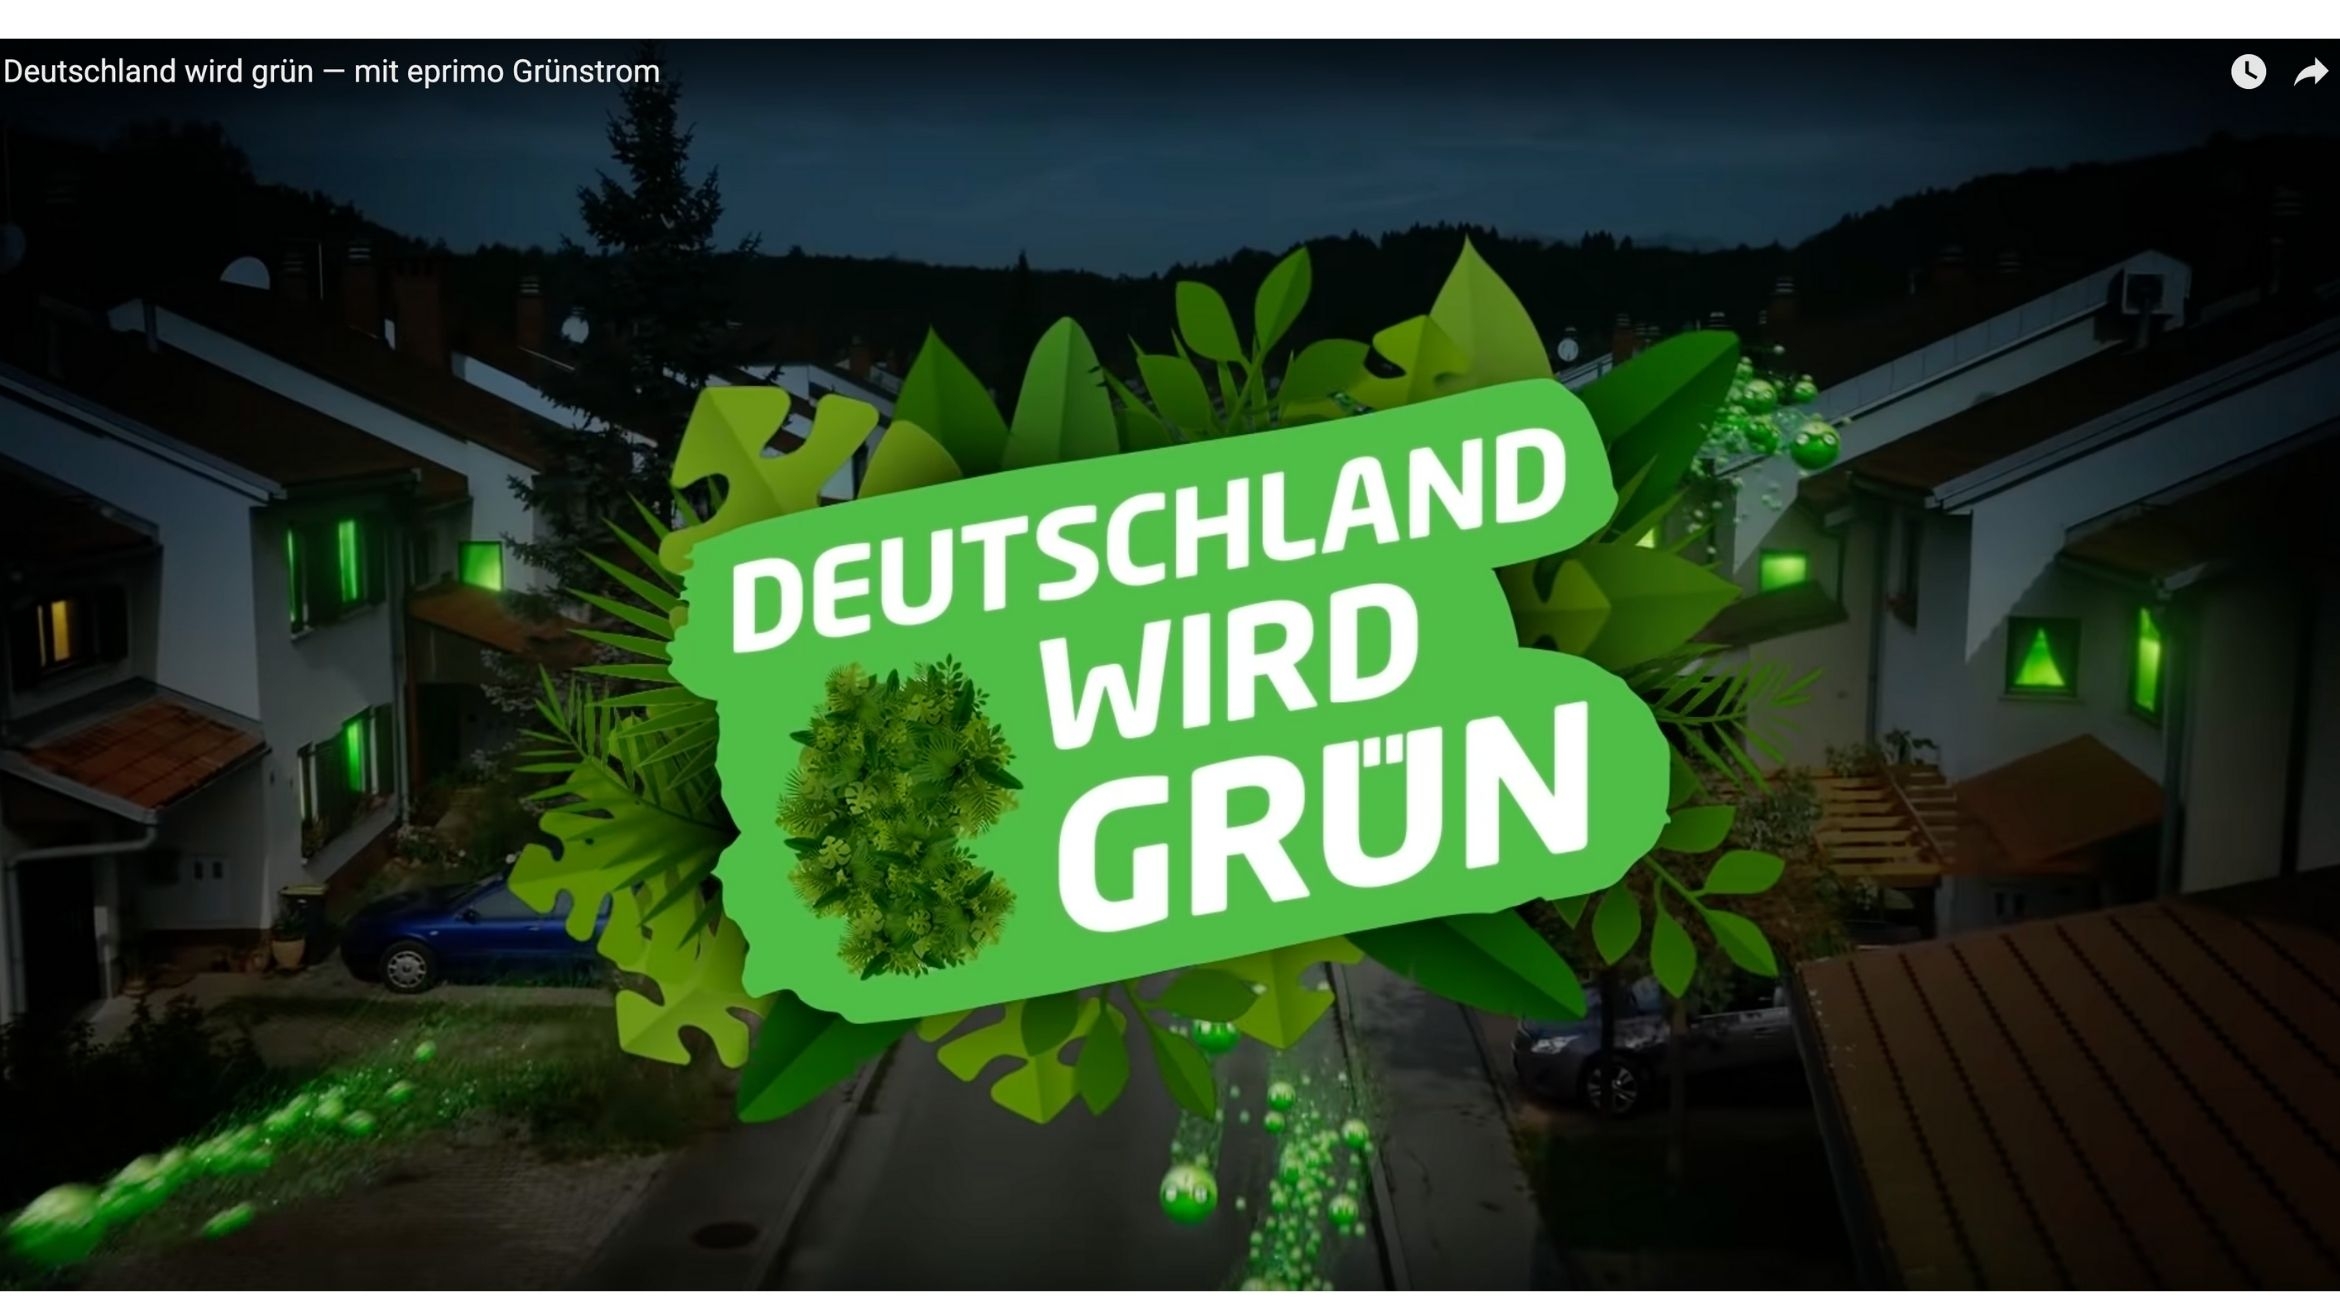 Aus dem neuen TV-Spot "Deutschland wird grün" – 